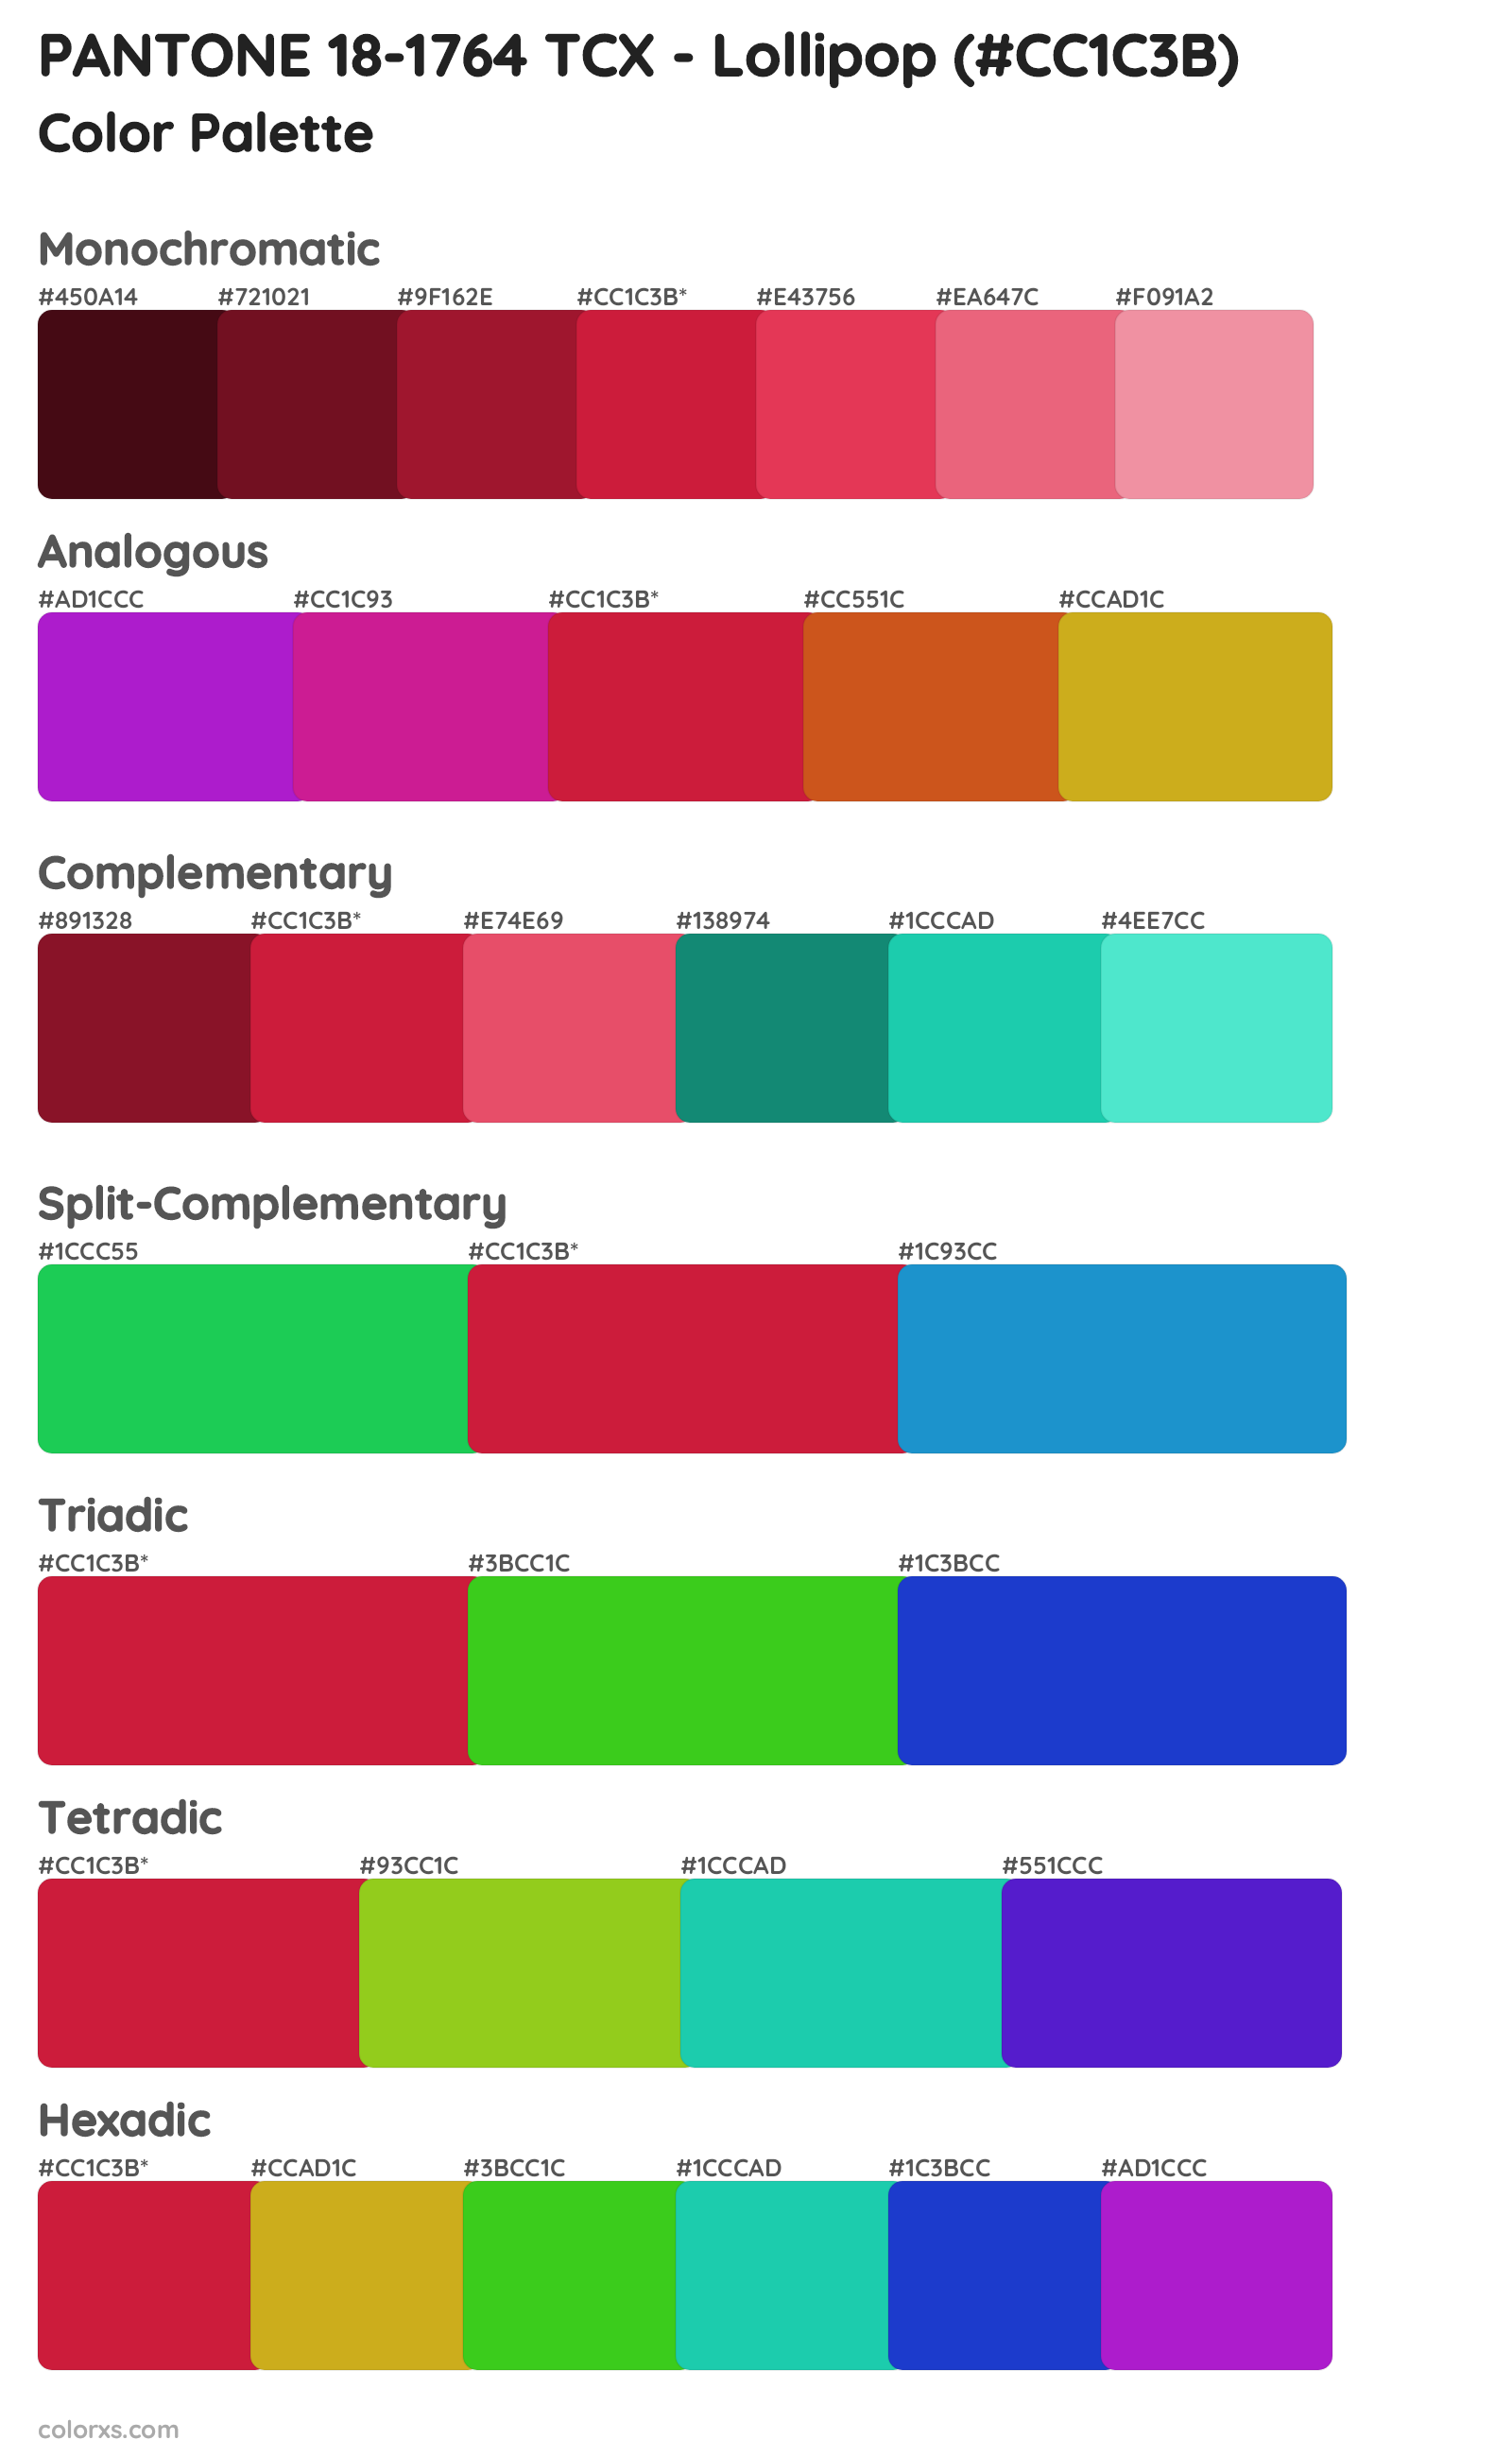 PANTONE 18-1764 TCX - Lollipop Color Scheme Palettes